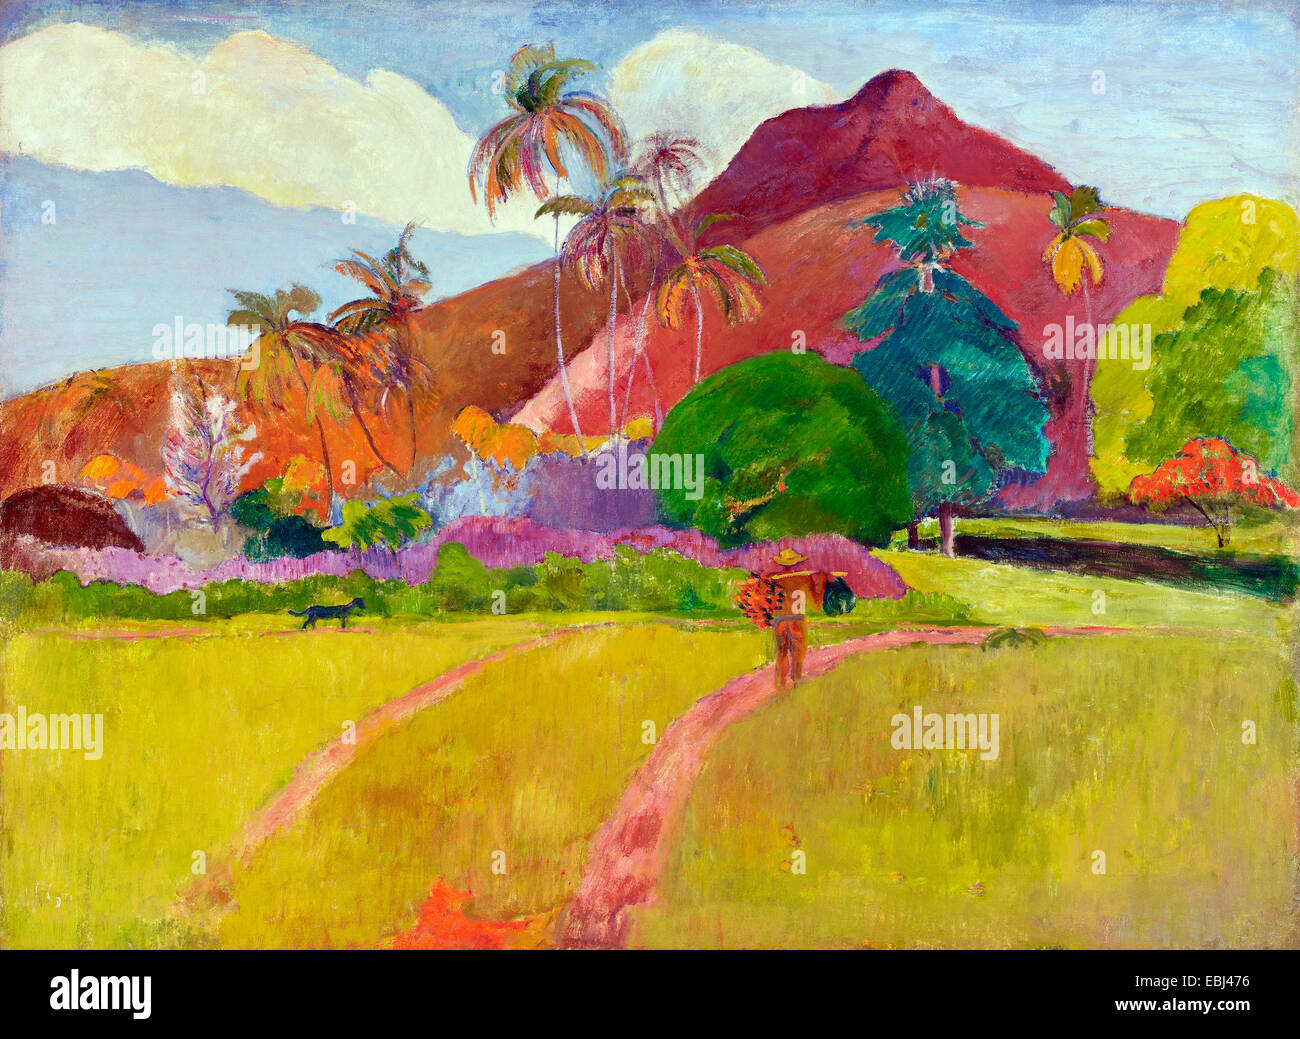 Paul Gauguin, paesaggio tahitiano 1891 olio su tela. Minneapolis Institute of Arts, Minnesota, Stati Uniti d'America. Foto Stock